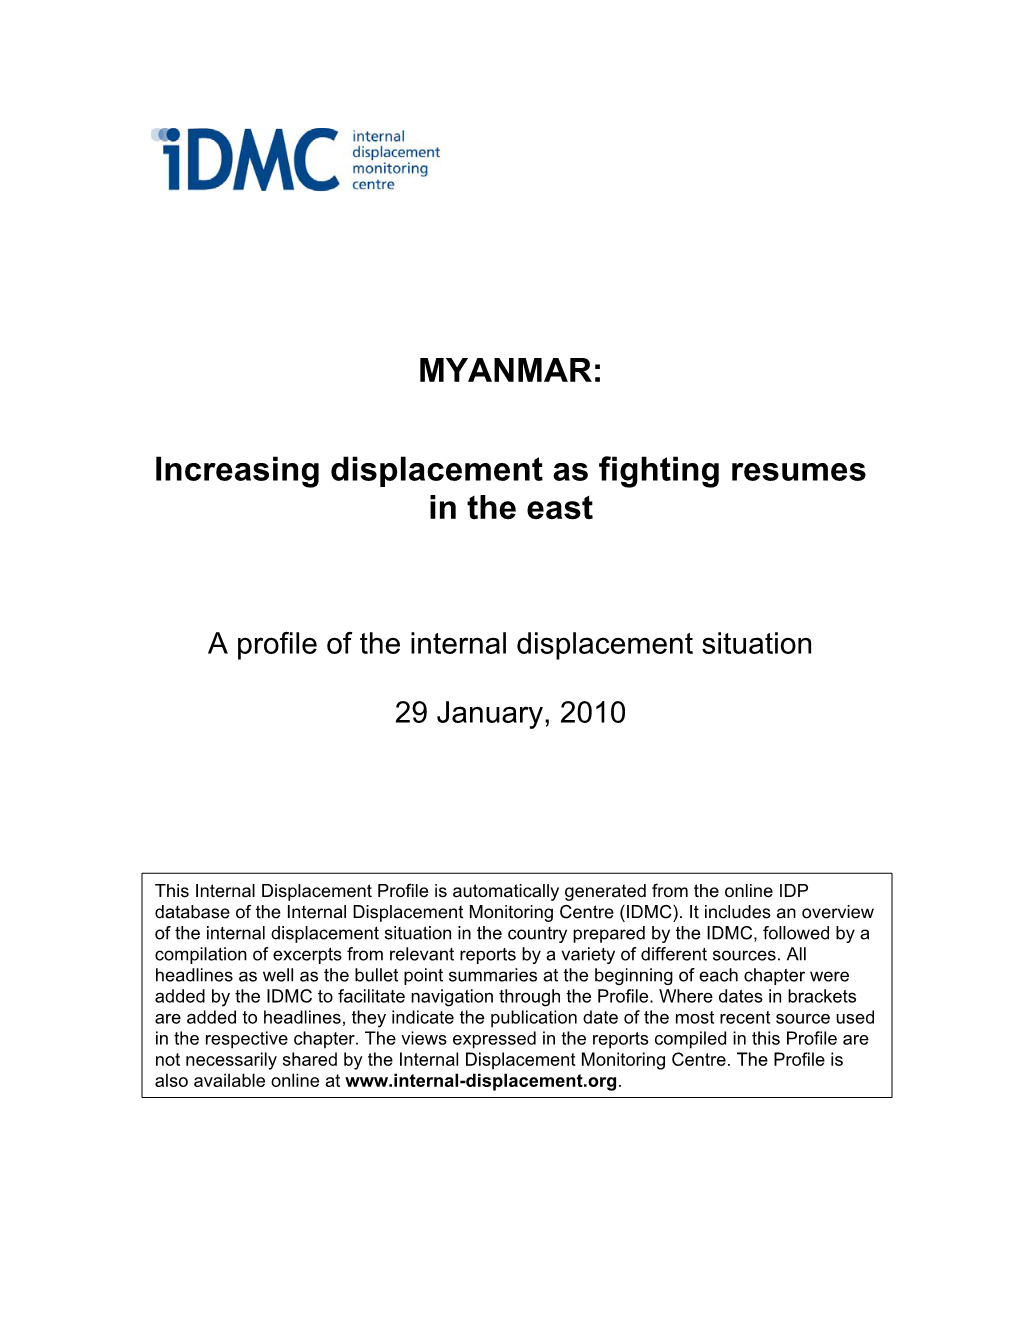 MYANMAR: Increasing Displacement As Fighting Resumes in the East